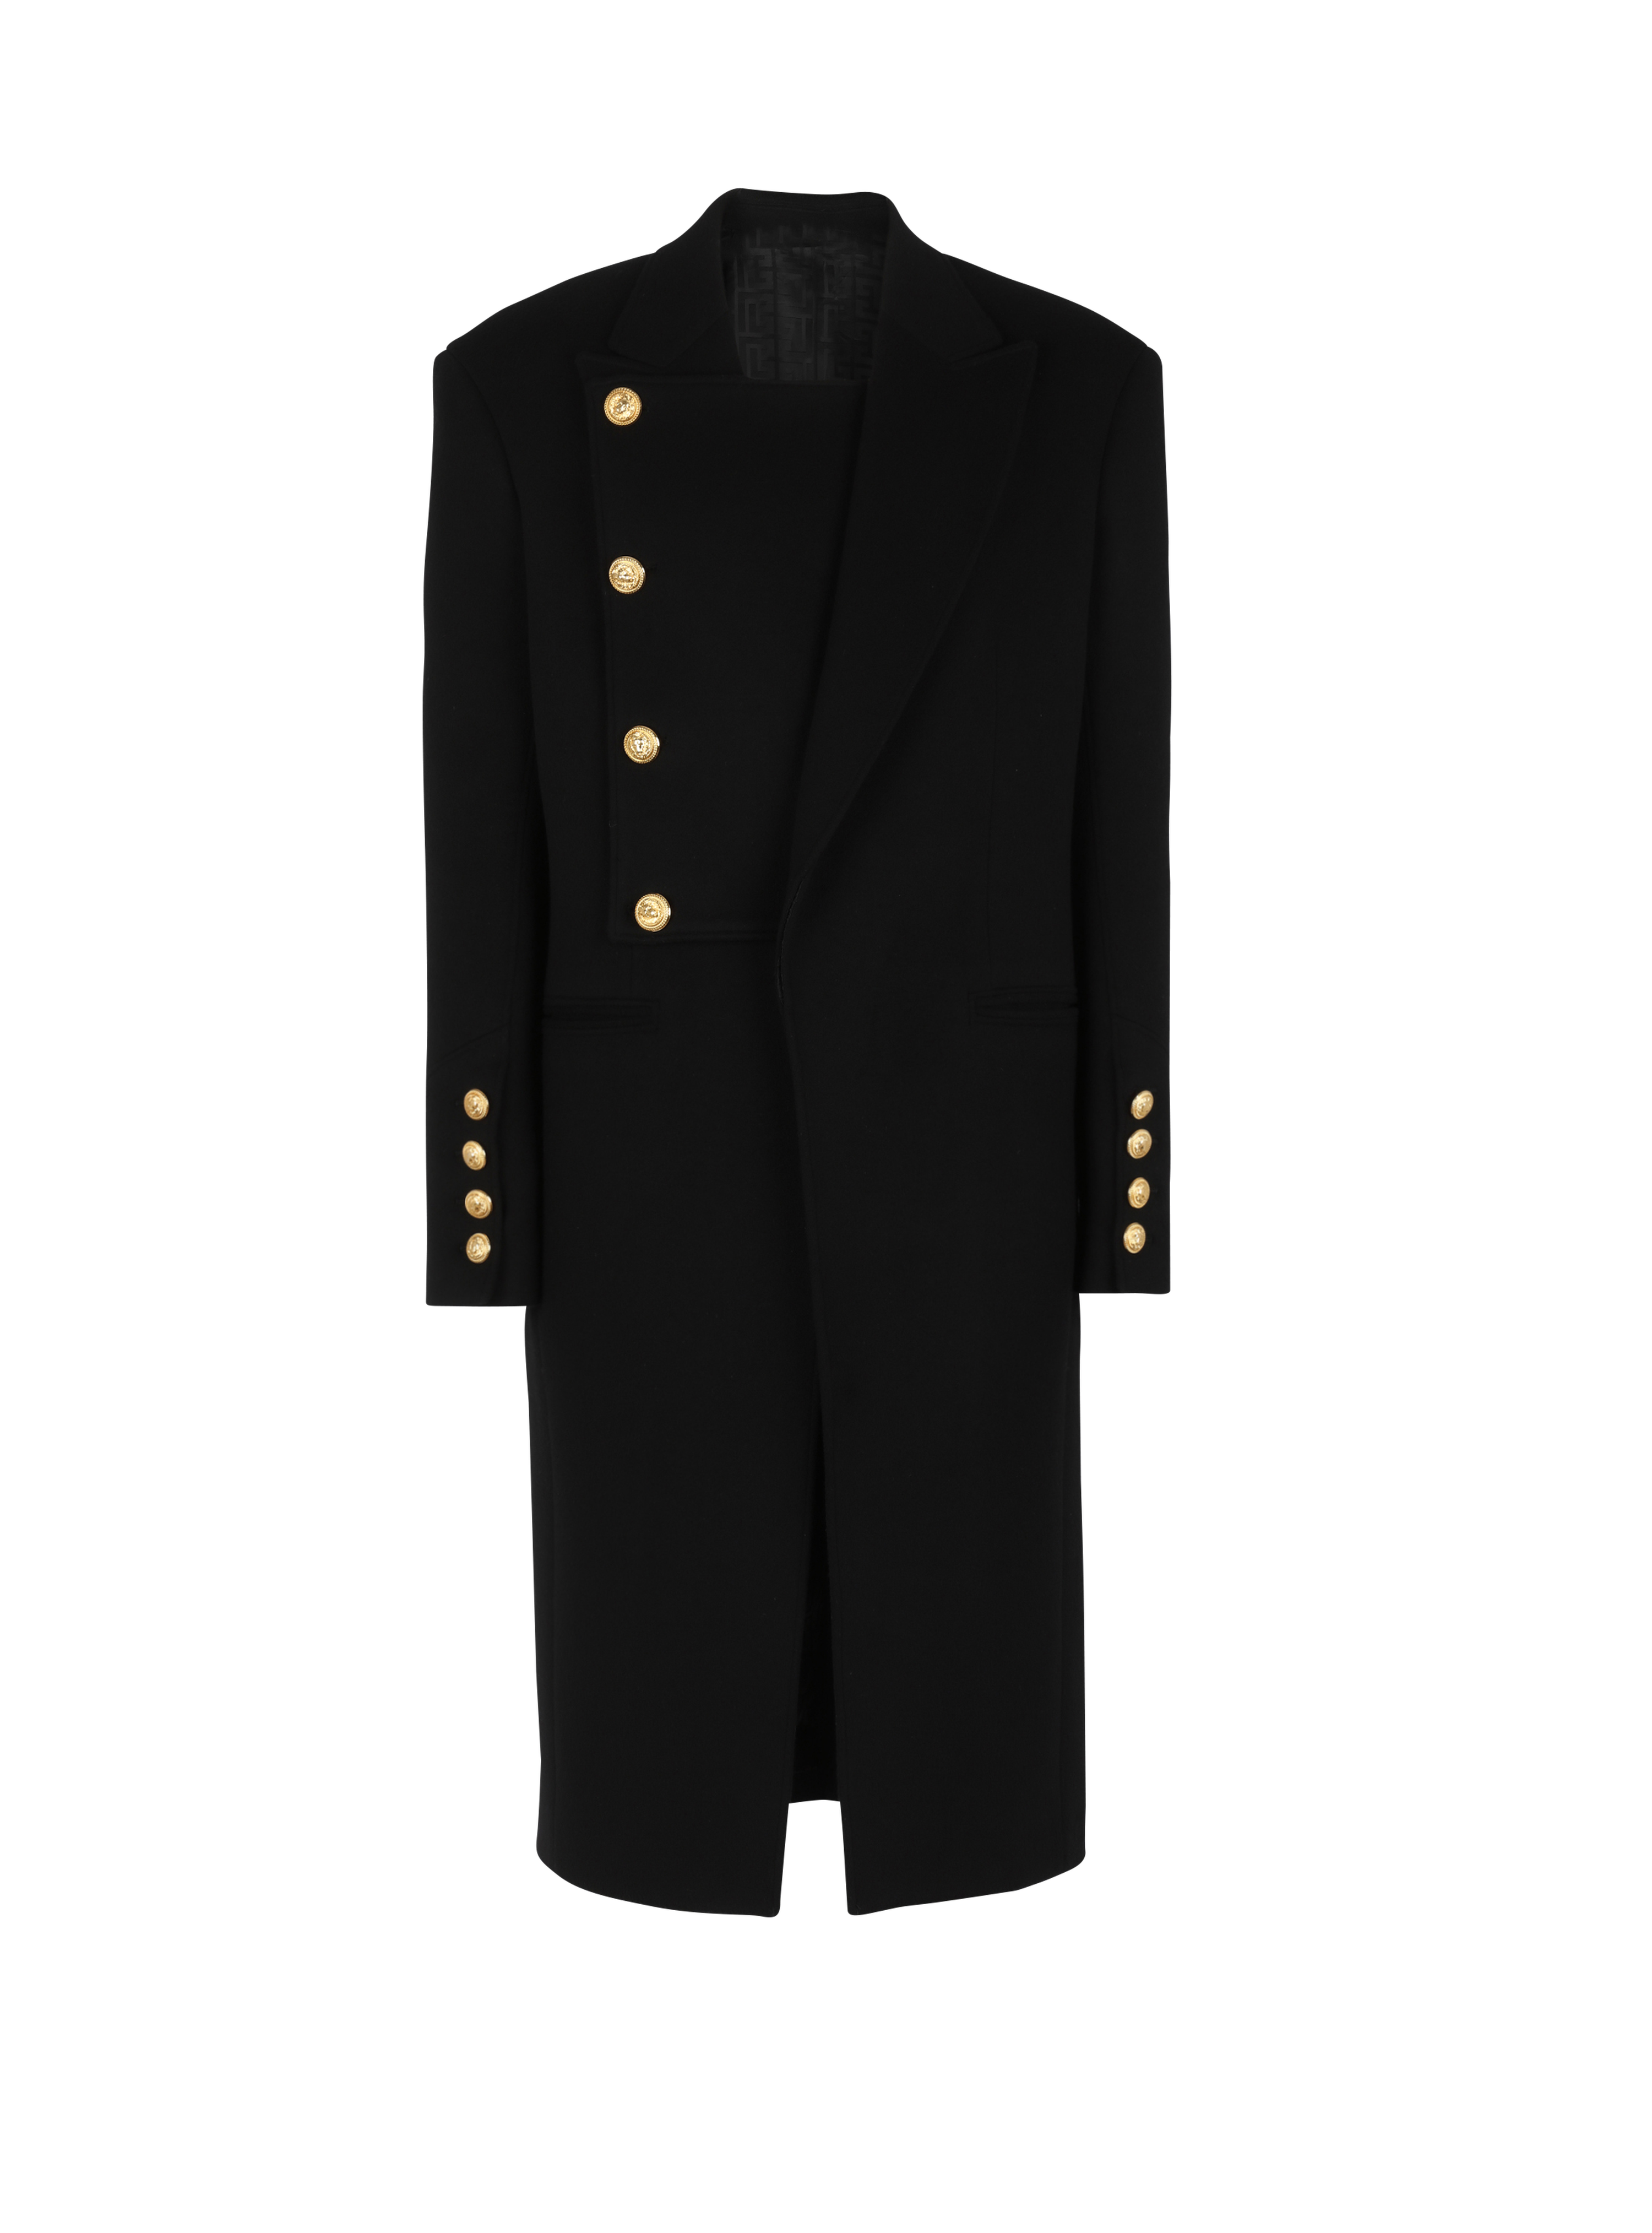 Unisexe - Manteau quatre boutons en laine à plastron amovible, noir